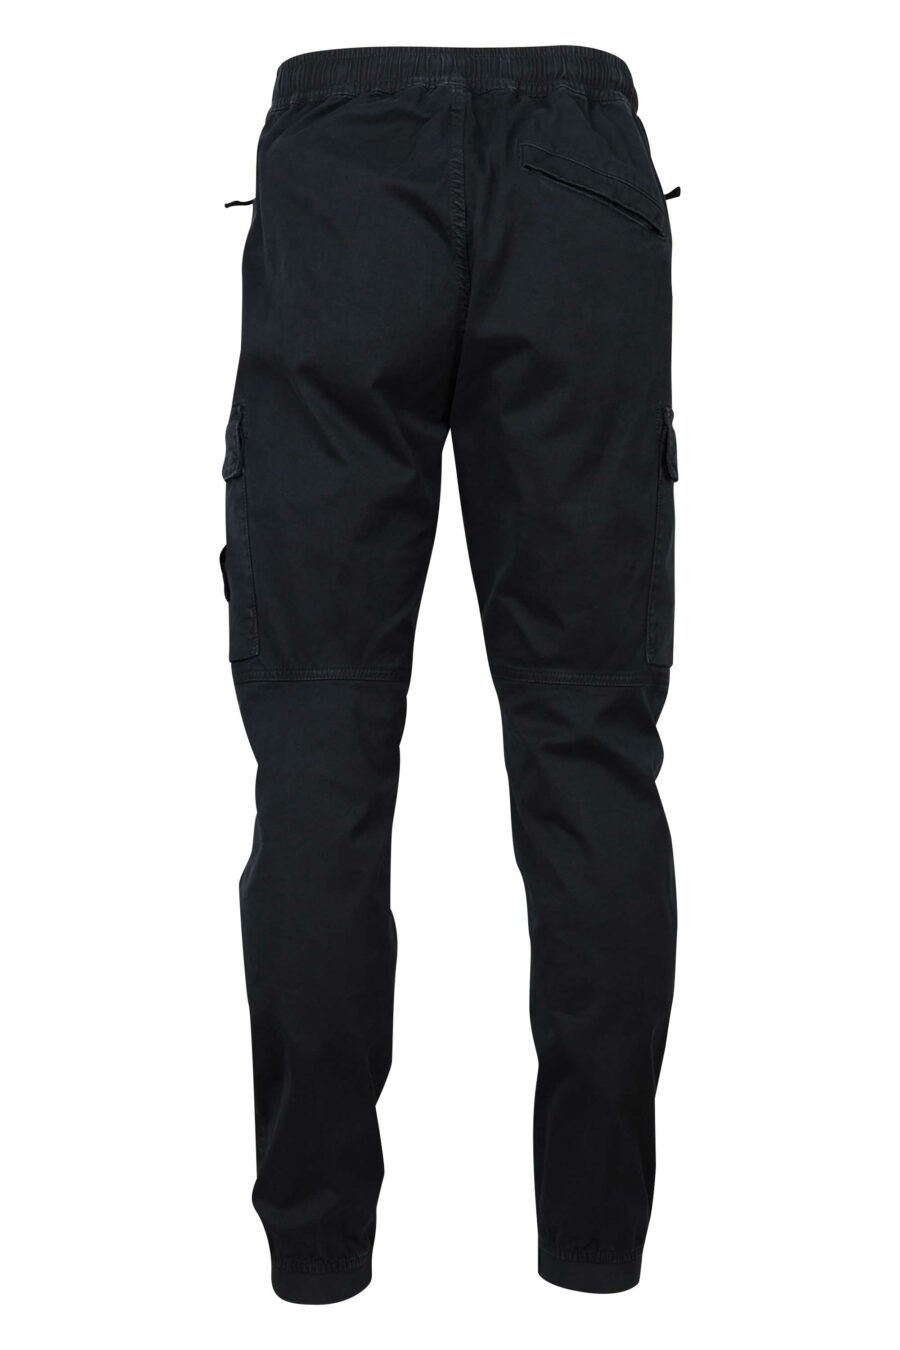 Pantalon noir avec patch logo sur le côté - 8052572723292 2